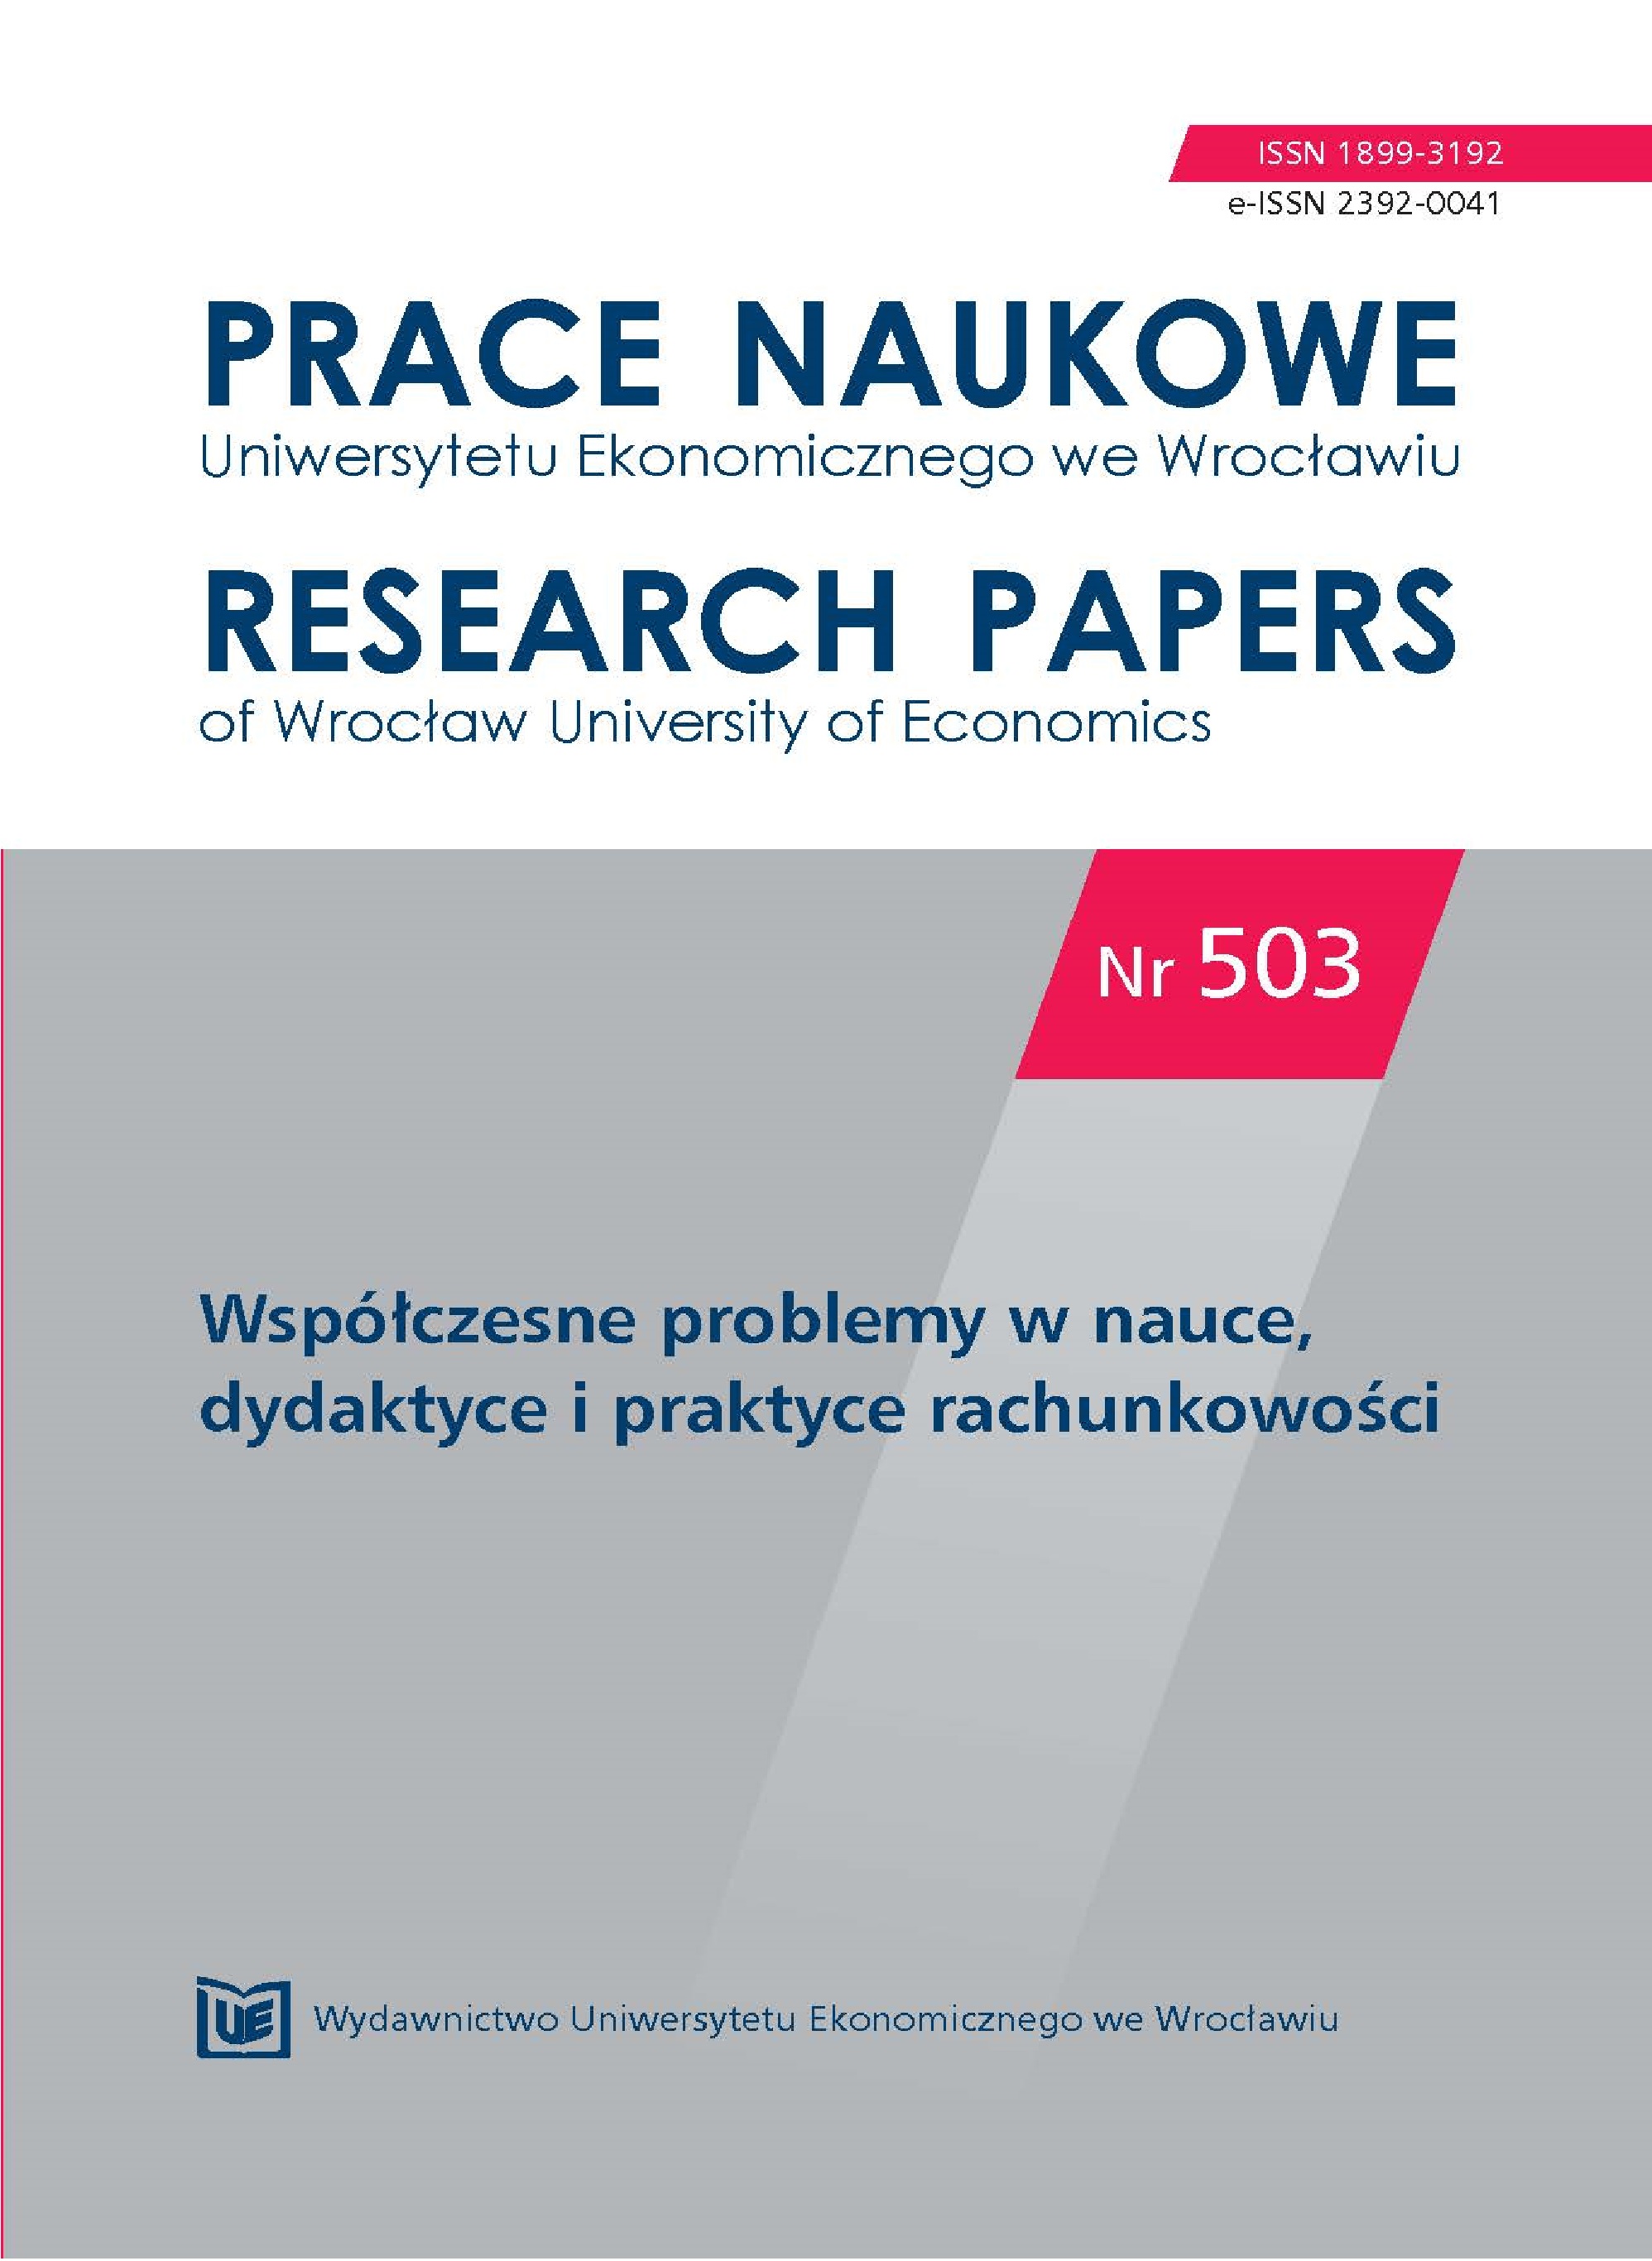 Badanie rozwoju publikacji z zakresu balanced scorecard na podstawie artykułów opublikowanych w polskich czasopismach